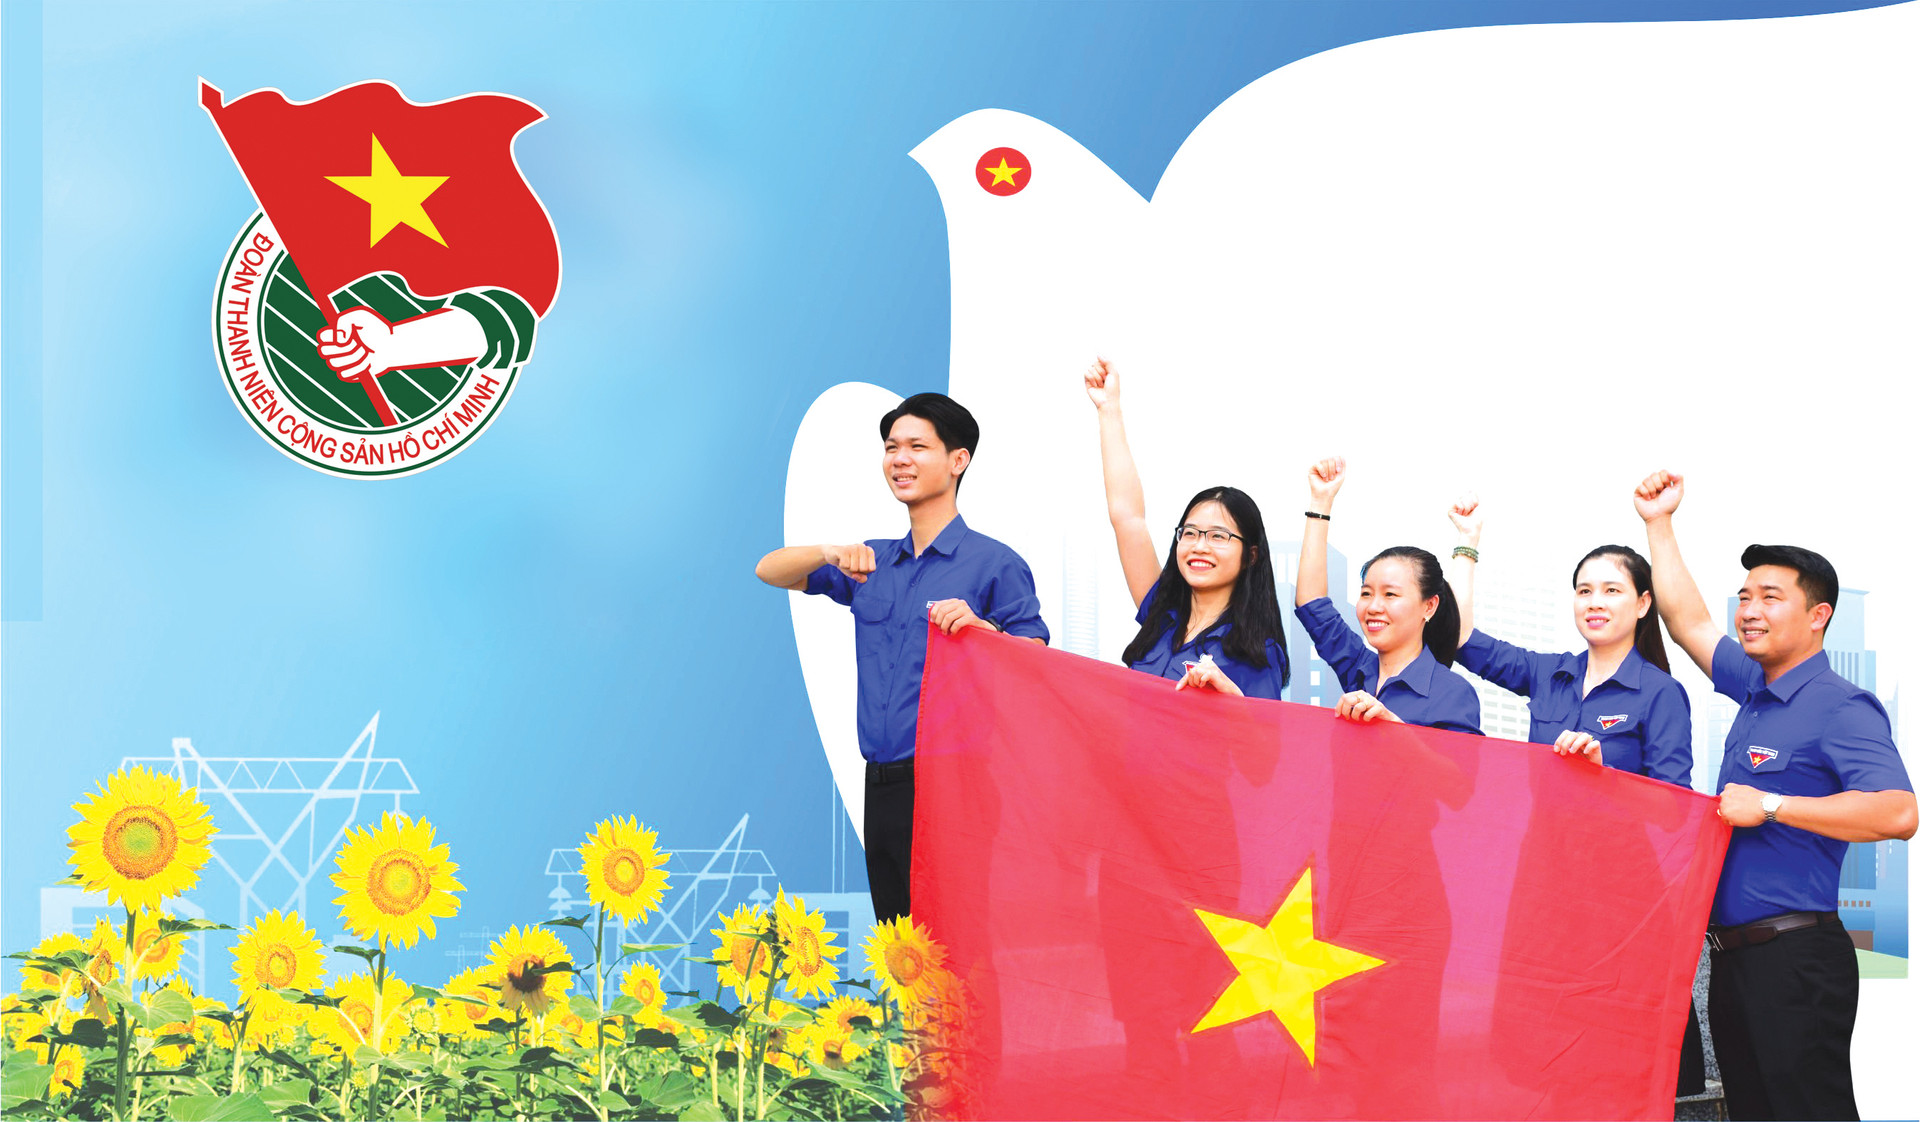 tuổi trẻ Bình Thuận: Những giai điệu khích lệ của tuổi trẻ Bình Thuận sẽ khiến bạn cảm nhận được năng lượng và sự kiên trì trong công việc và cuộc sống.